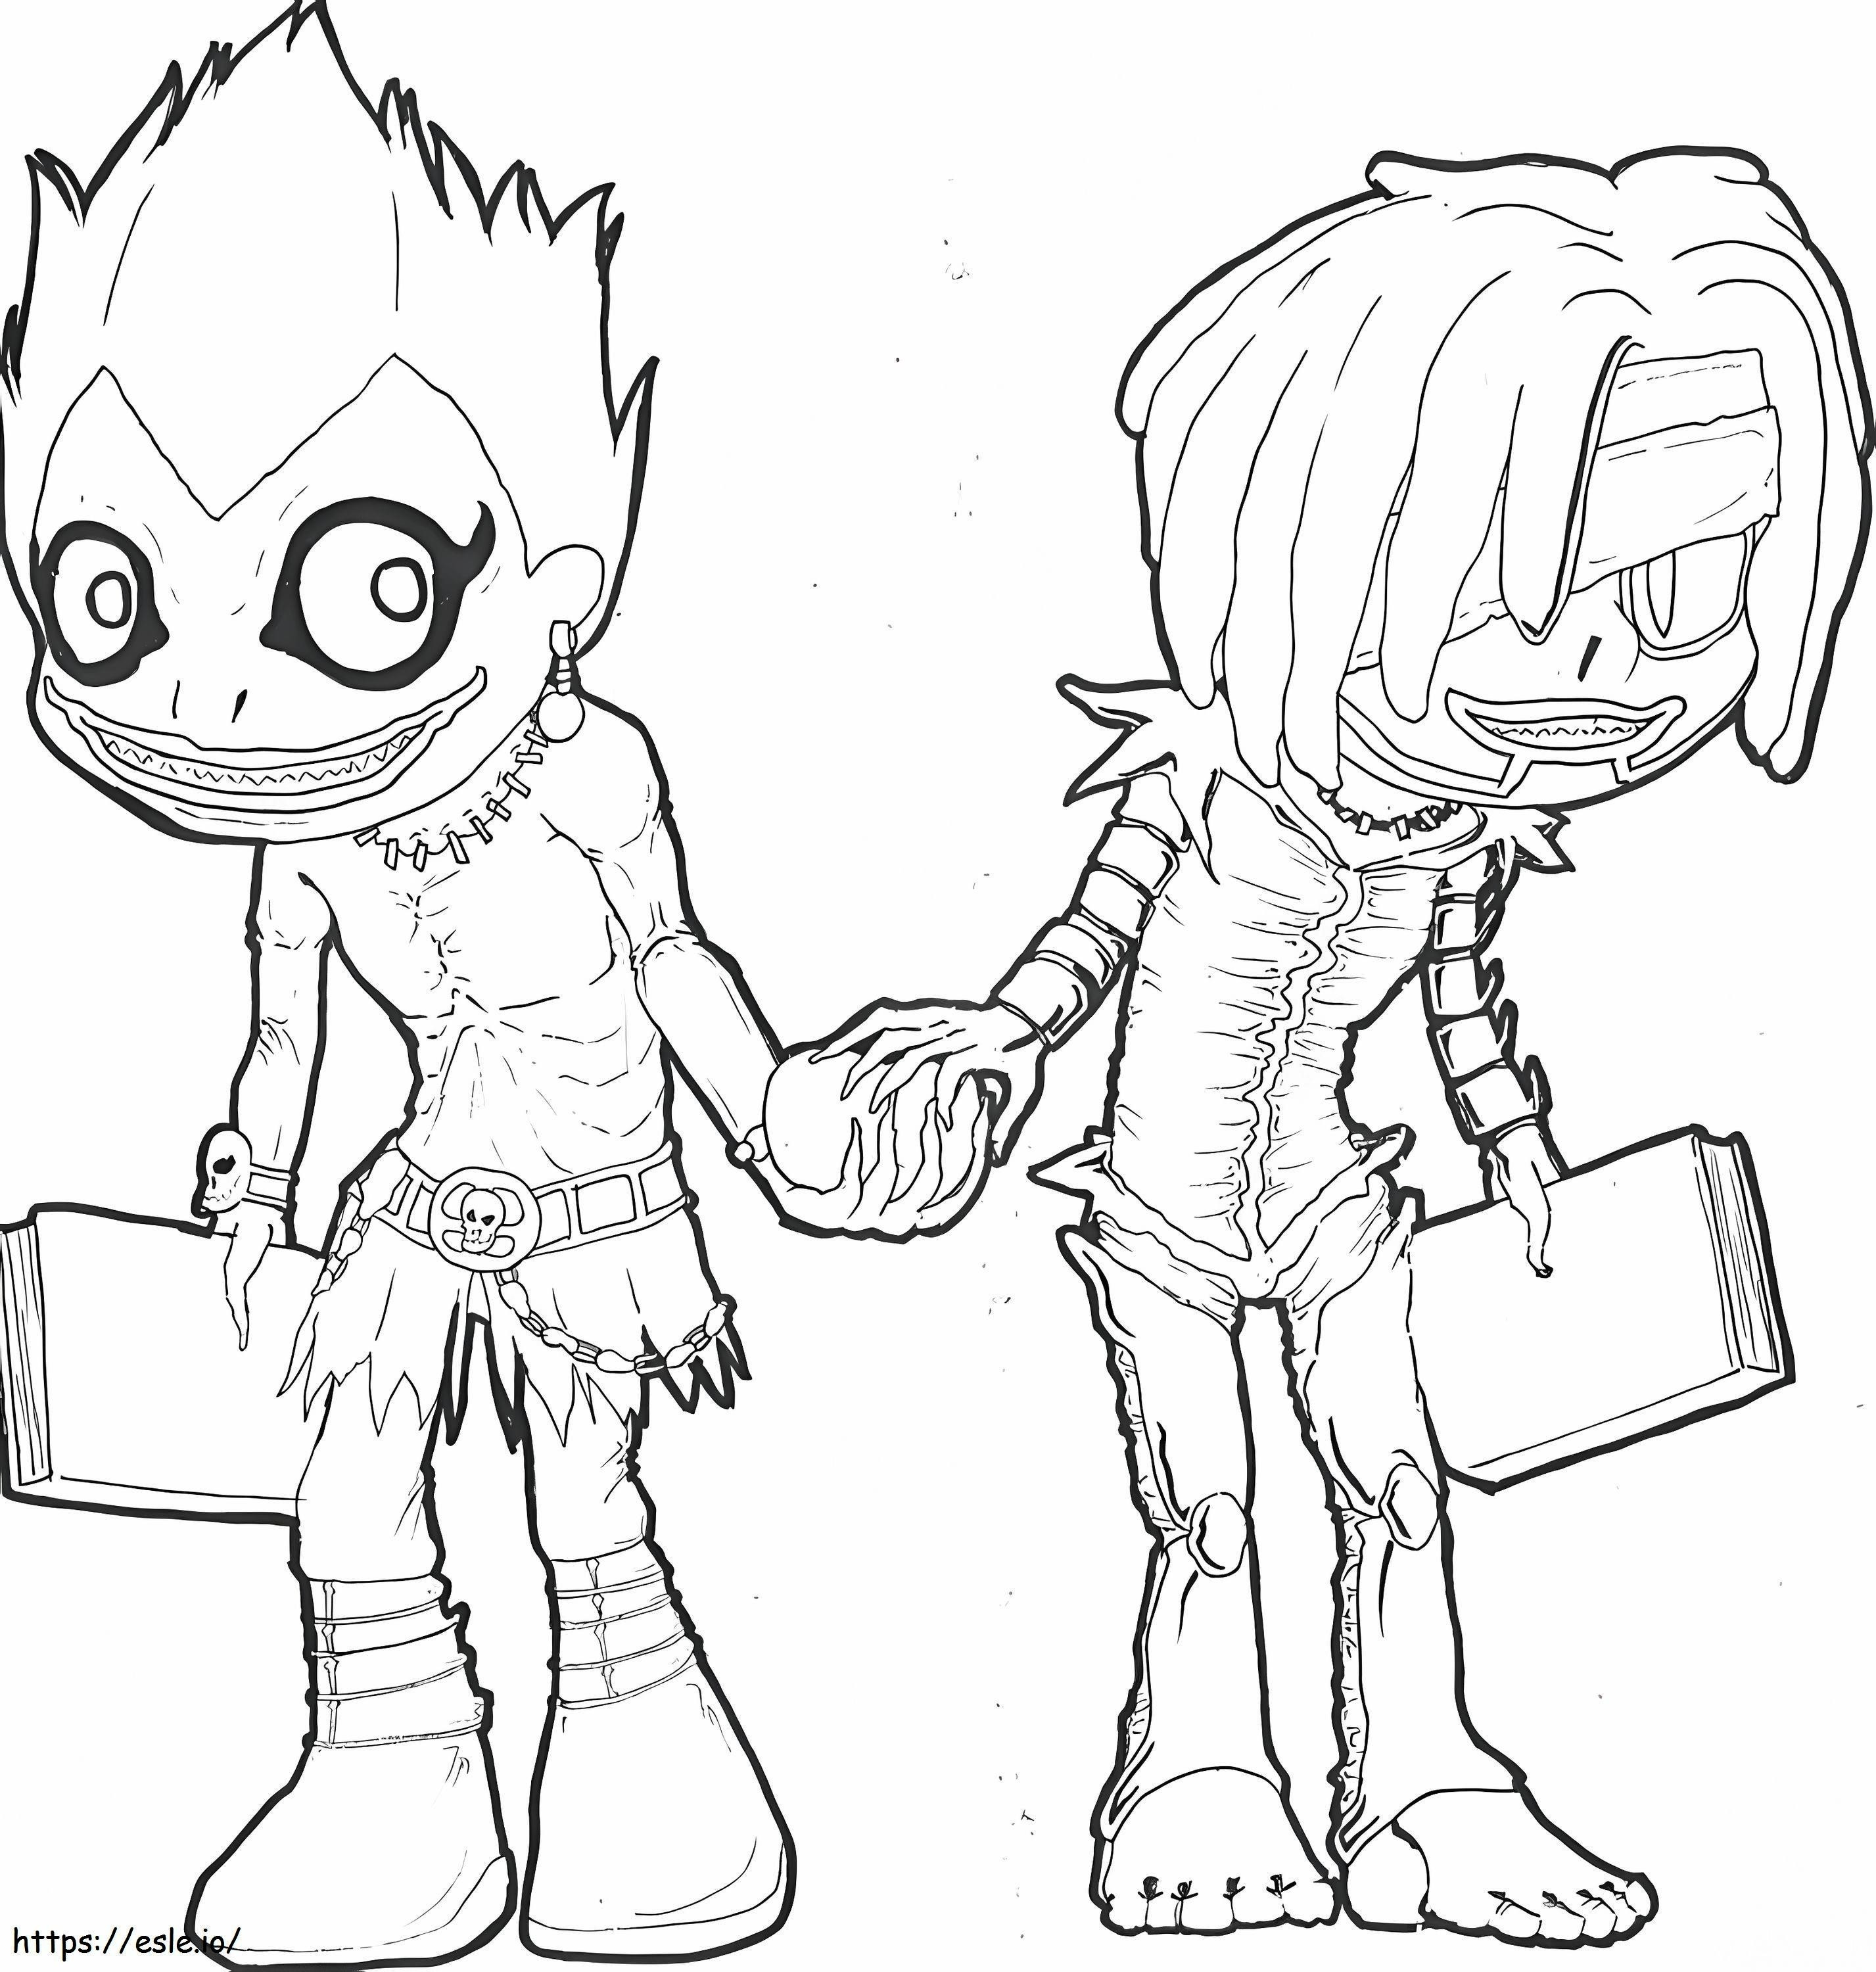 Ryuk i Rem z Death Note kolorowanka